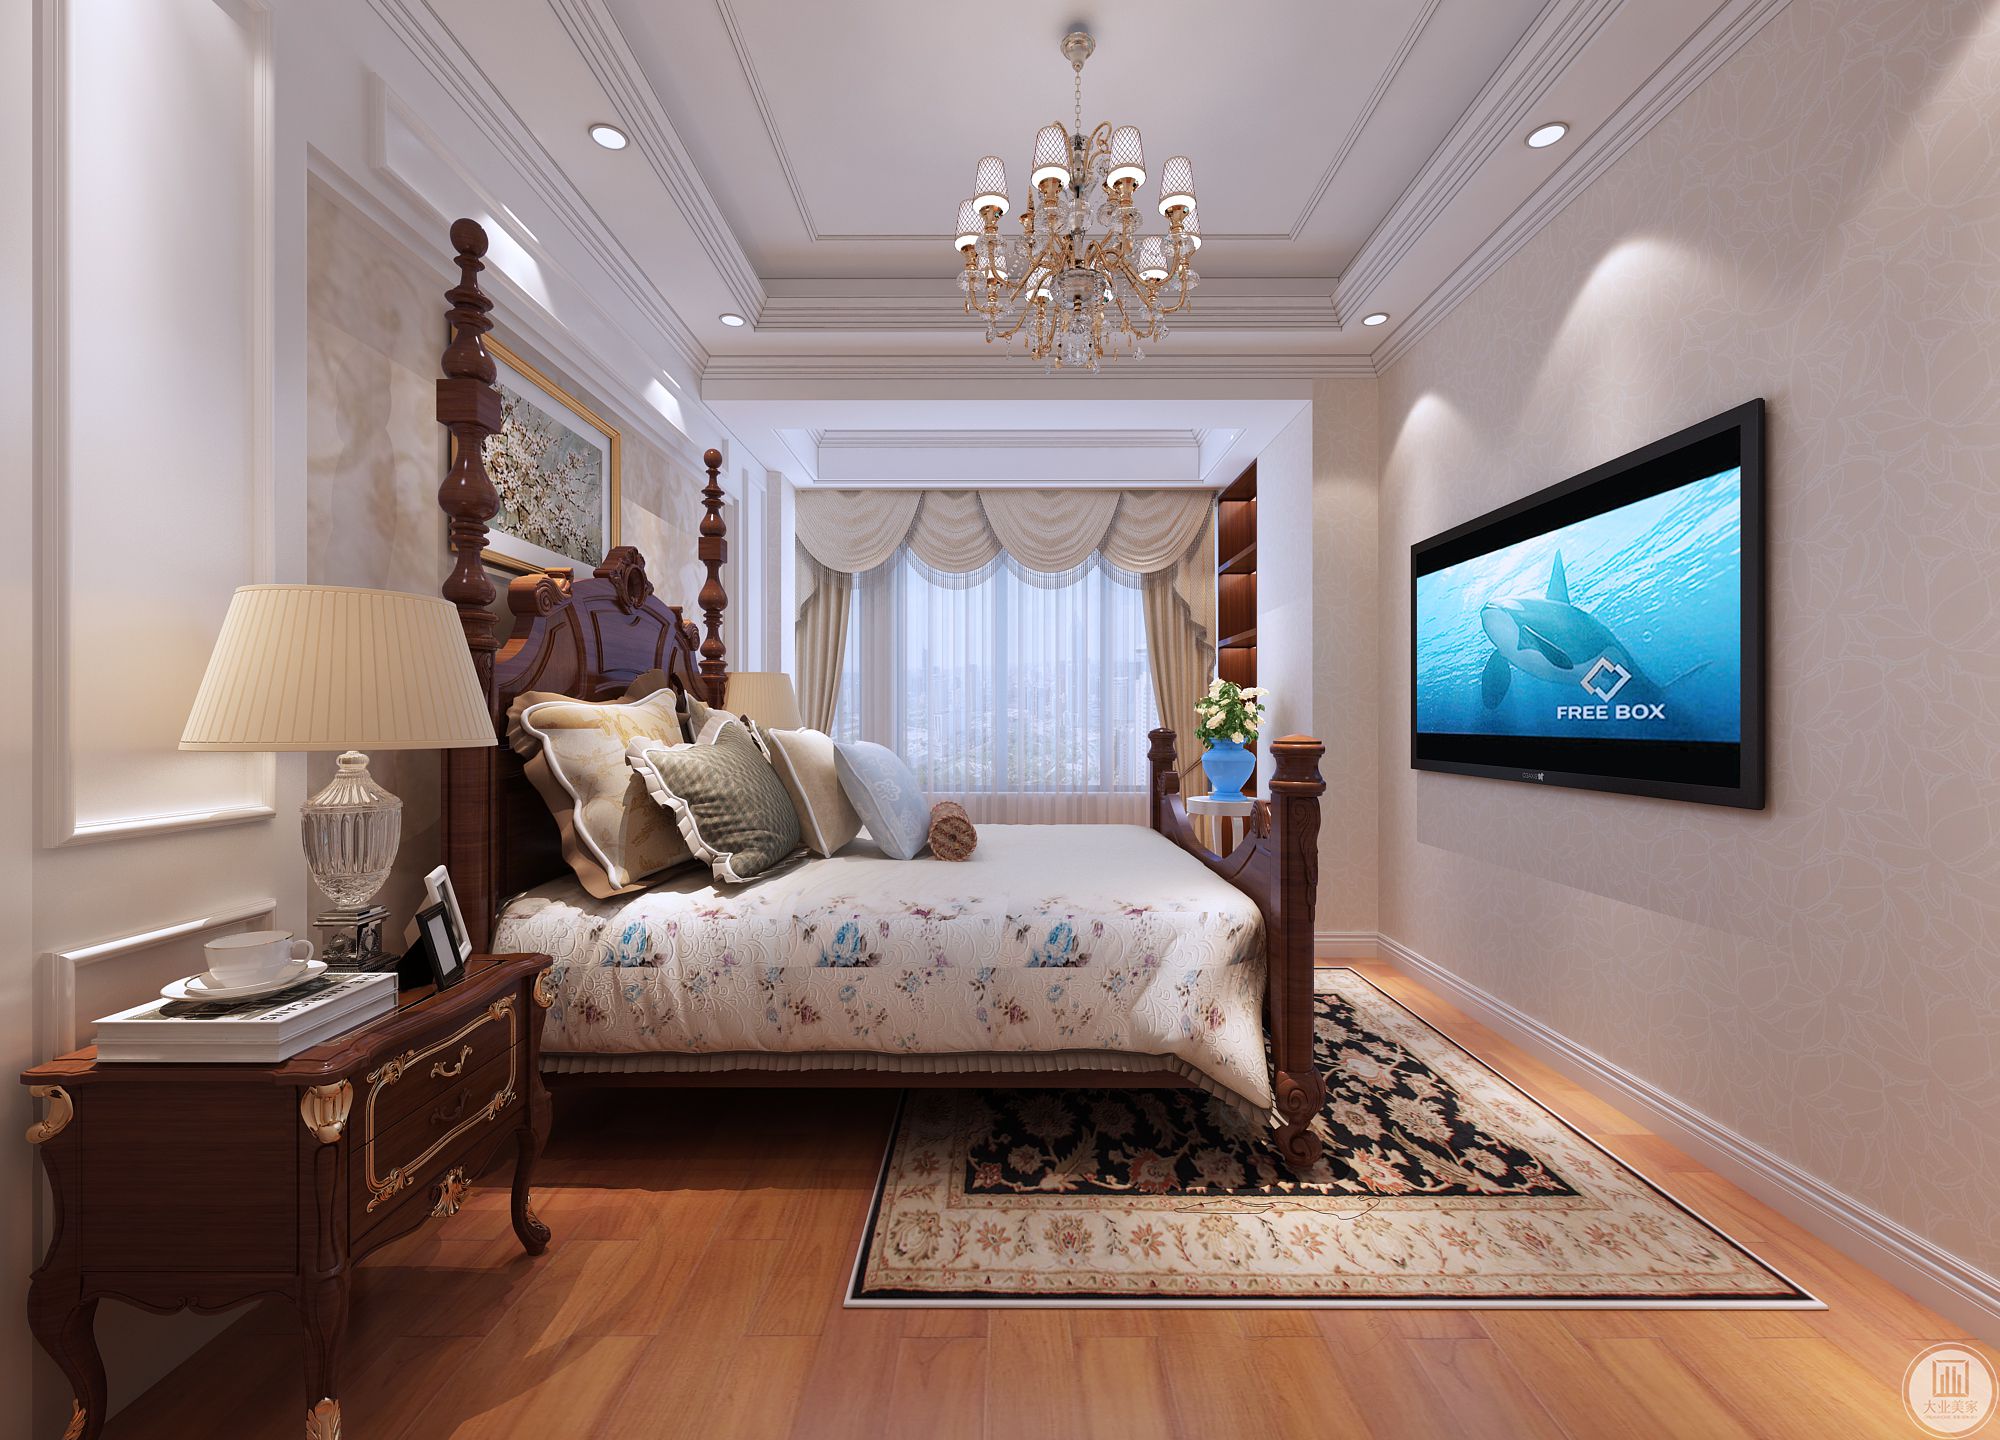 大气舒适的床，暖色壁纸， 卧室雅致而静谧，使空间饱满舒适。 经典的简欧家具提升了整个睡眠空间的品质感。